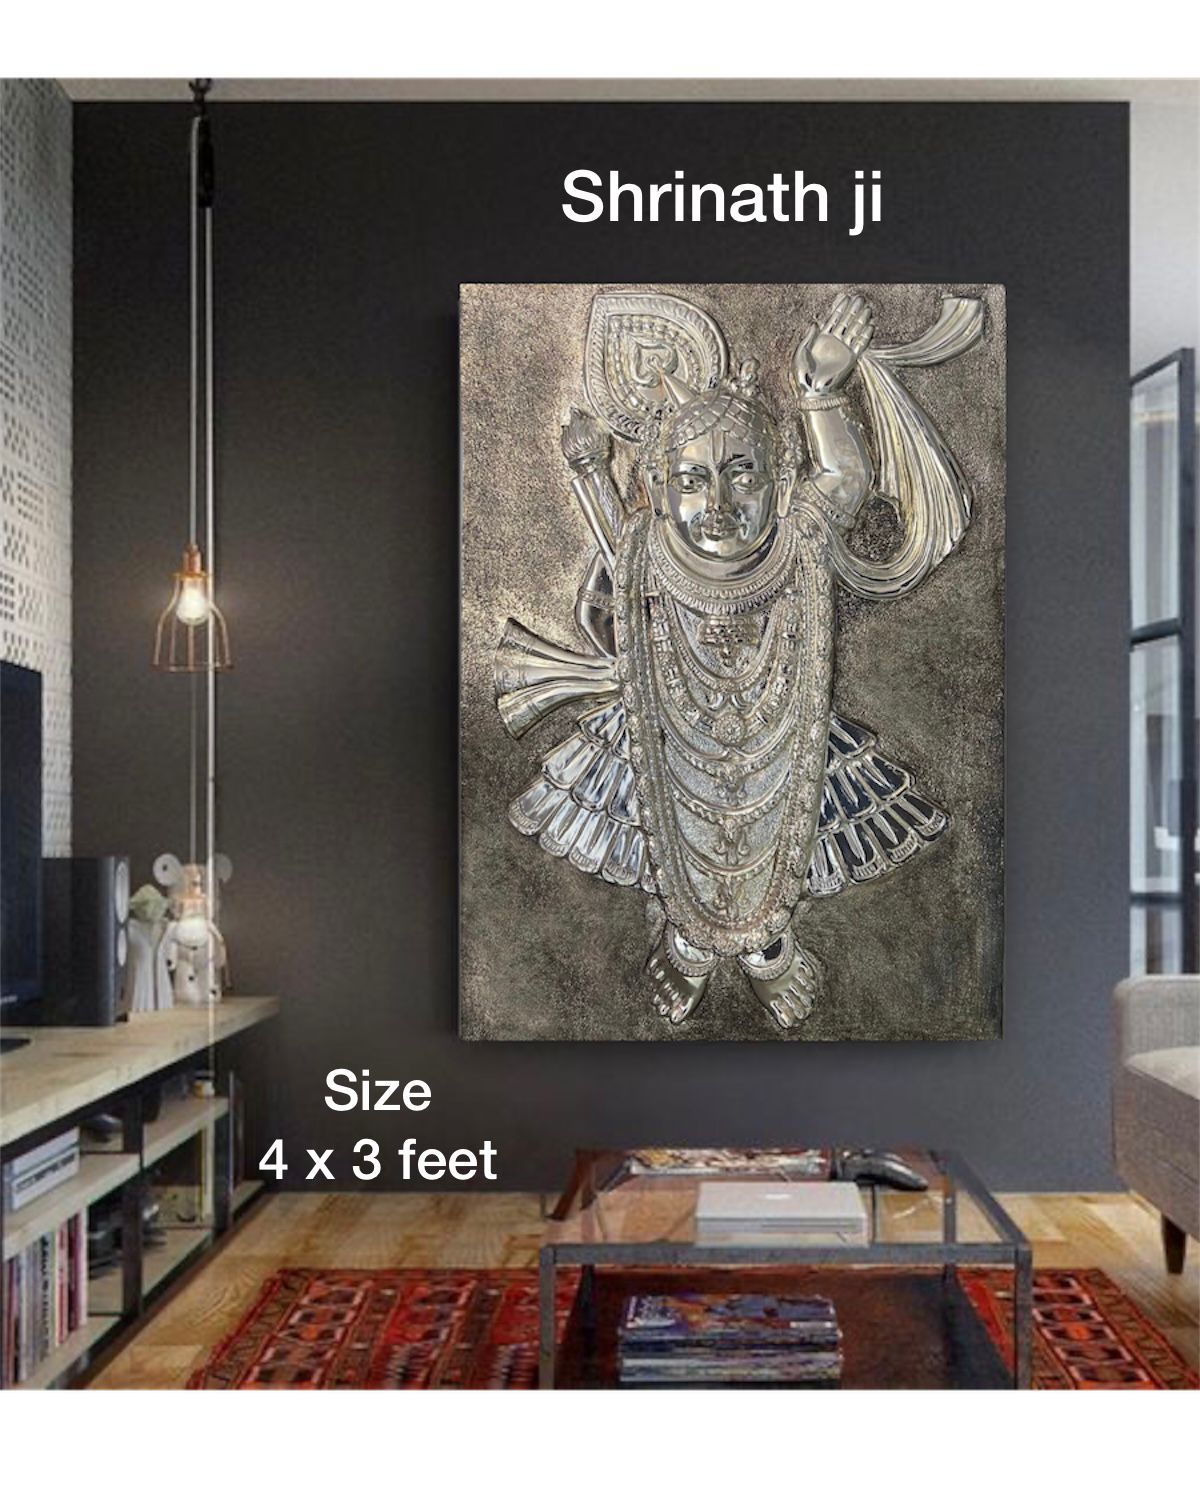 SriNath ji wall hanging- 4x3 feet